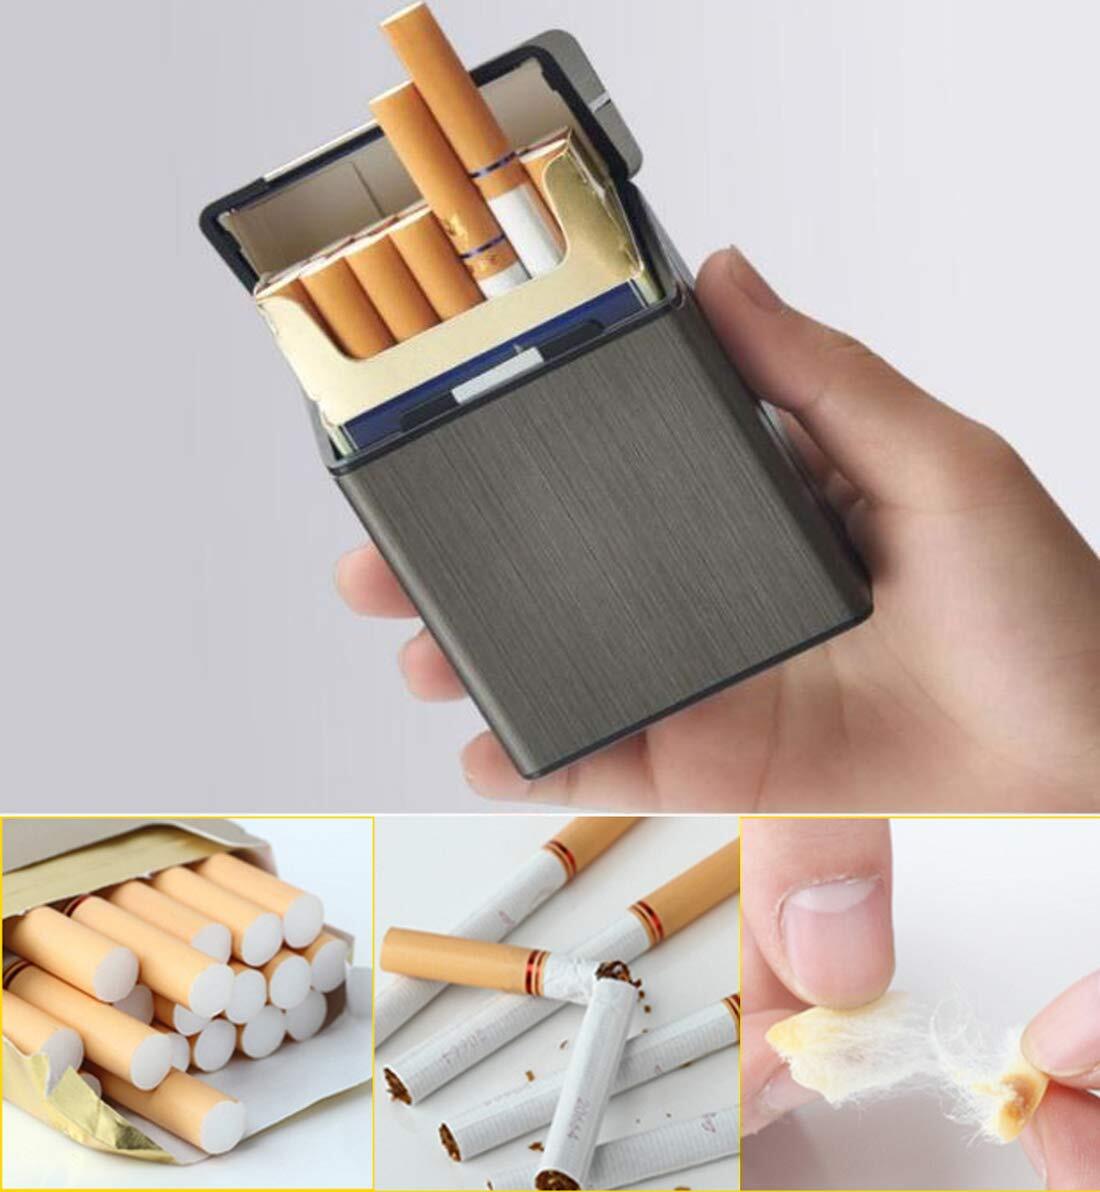 【特価セール】タバコケース メタルシガレットケースは85mm20本のタバコ 軽量アルミニウムプラスチックシガレットケースを収容でき_画像3